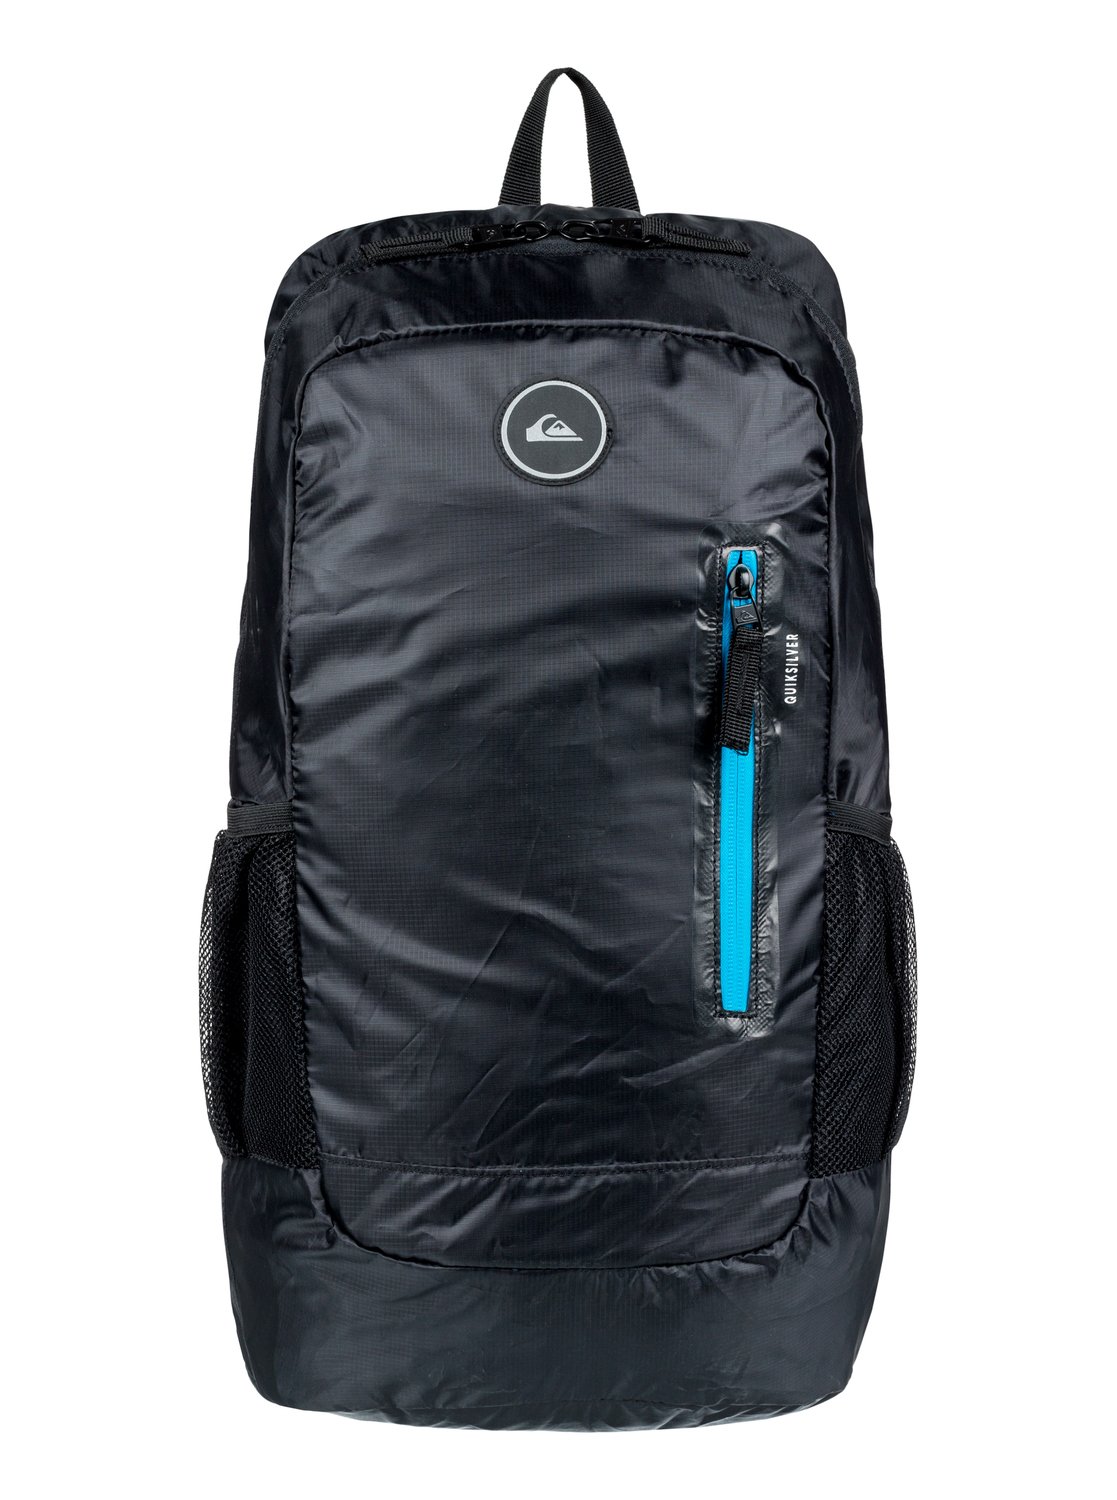 Quiksilver™ Men's Octo 22L Packable Backpack EQYBP03416 | eBay